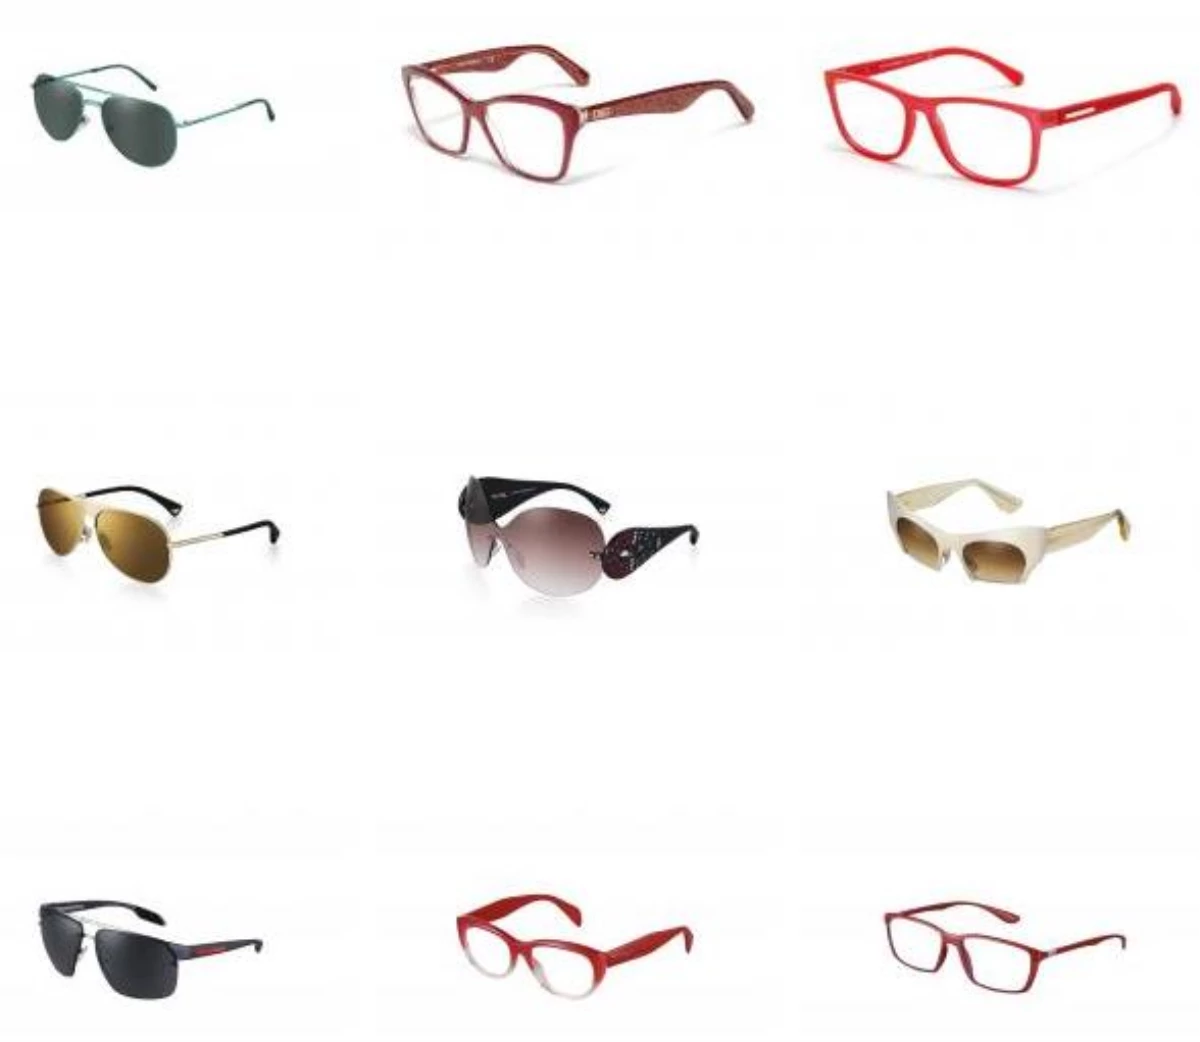 Yeni Yılda Luxottica Gözlükte Harika Öneriler Sunuyor